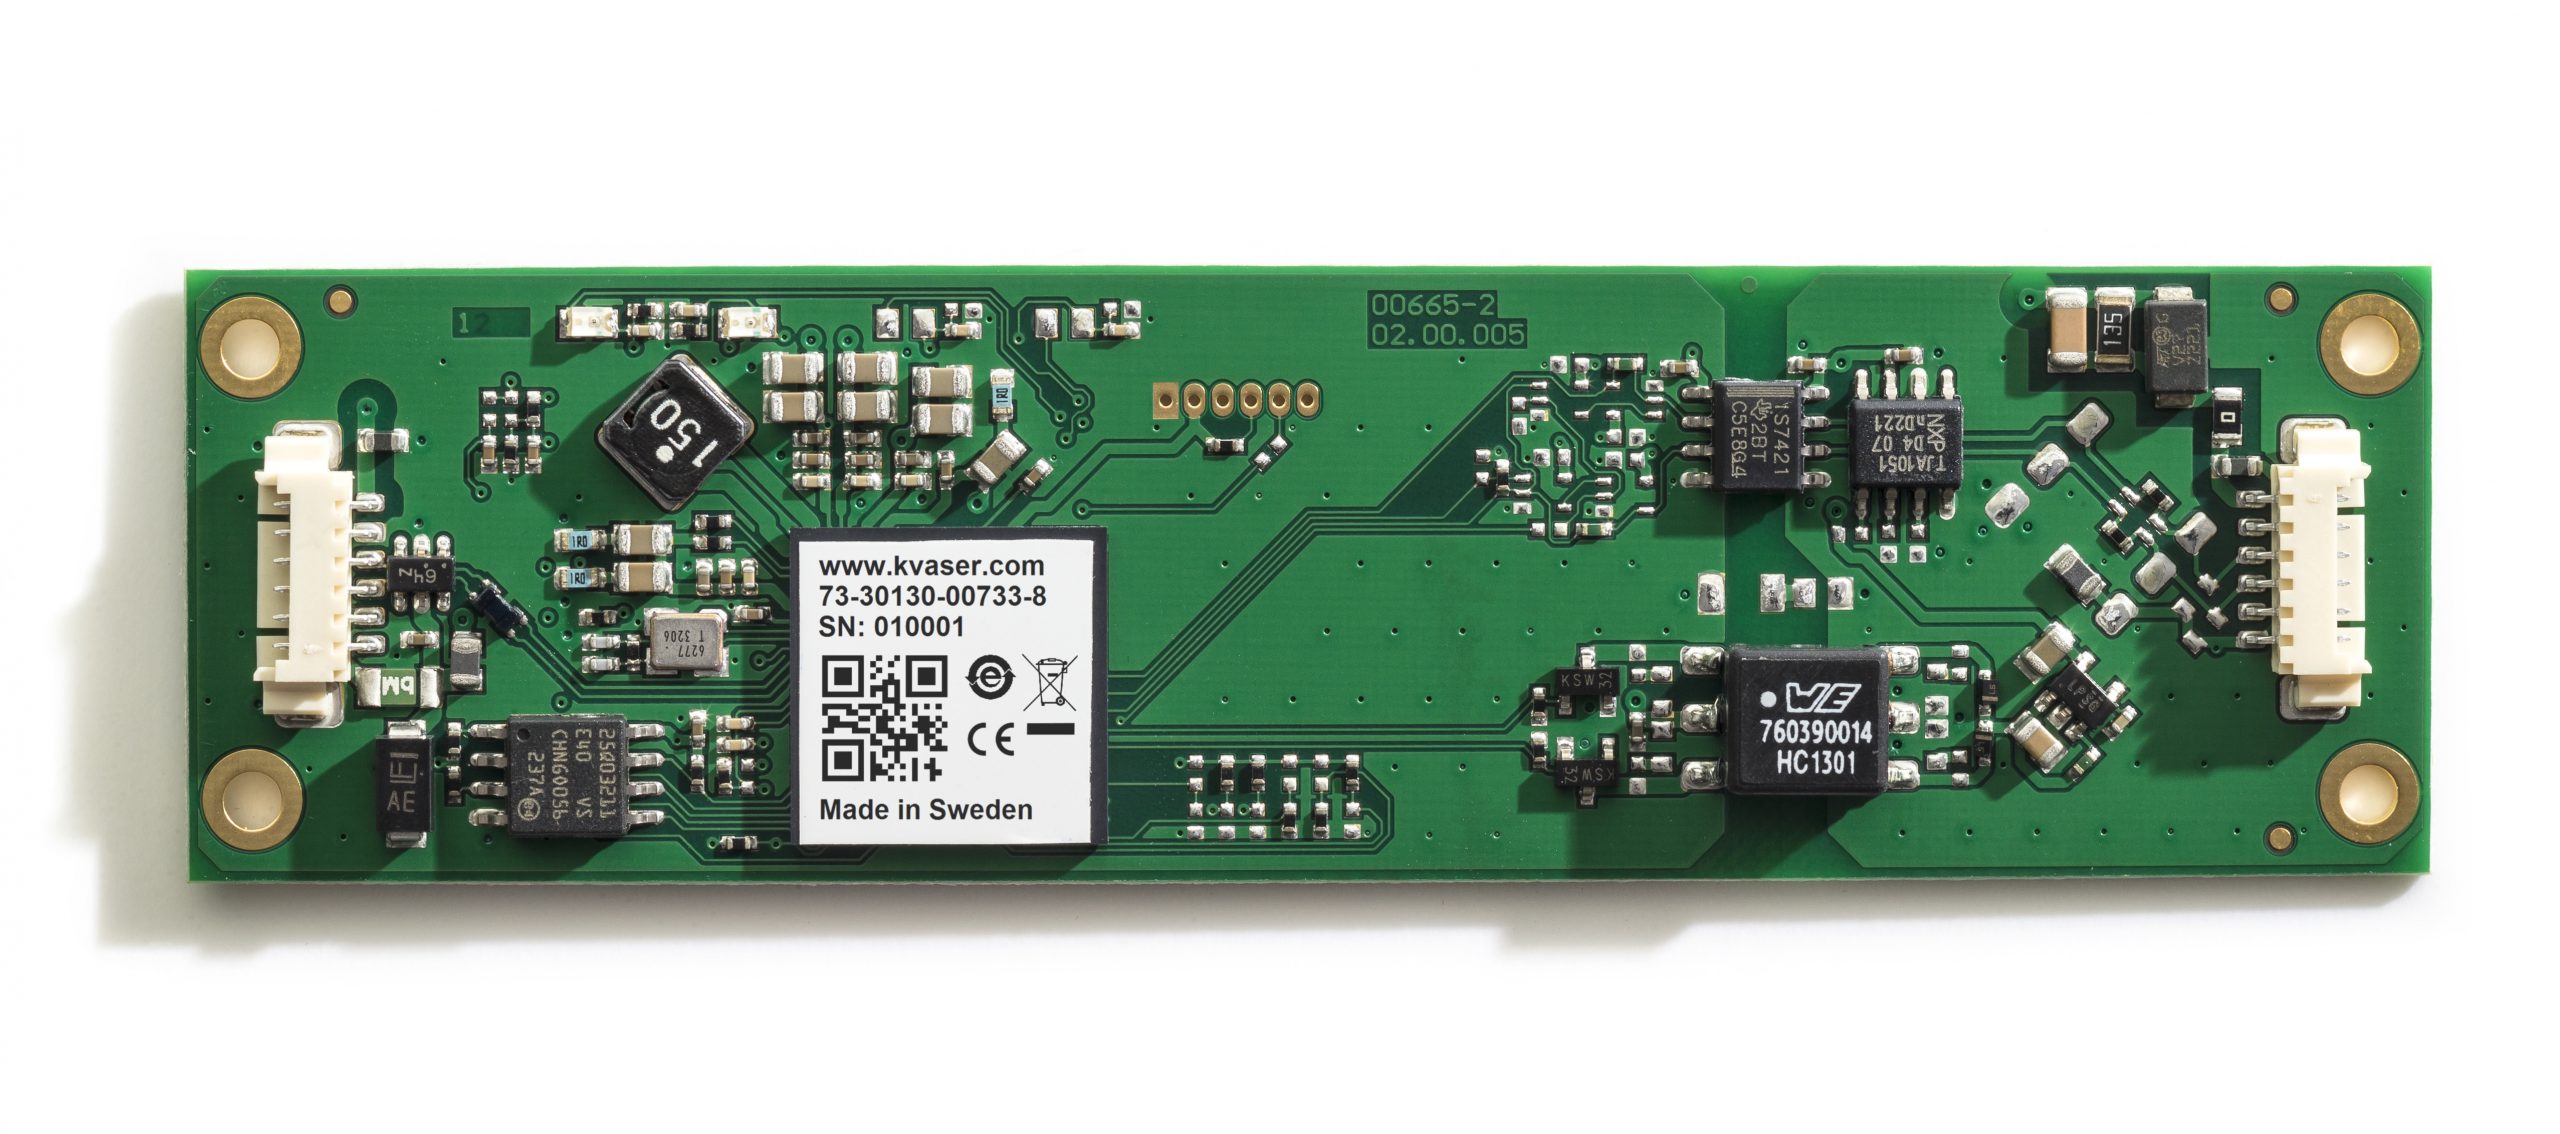 Bare-circuit-board-of-leaf-light-v2-interface-kvaser-leaf-light-hs-v2-cb-interface-ean-73-30130-00733-8